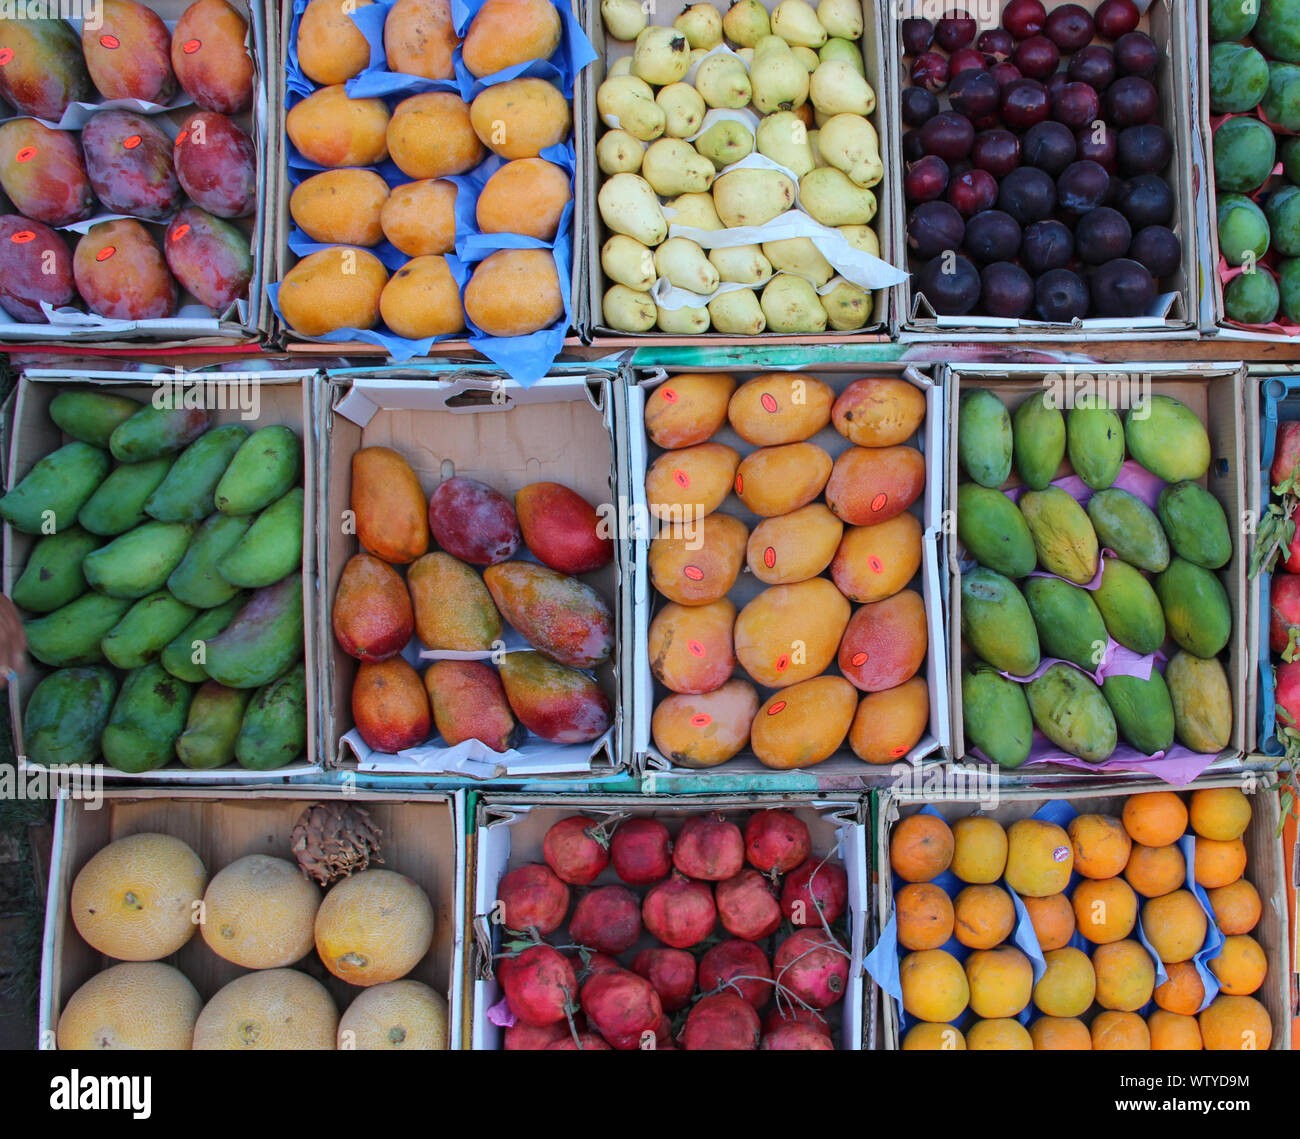 Früchte werden in Fach von Street Hersteller verkauft. Obst Fächer für Verkauf von Mangos, Granatäpfel, Bananen, Pflaumen, Guave, Orangen. Frisches Obst im Shop. Obst Stockfoto